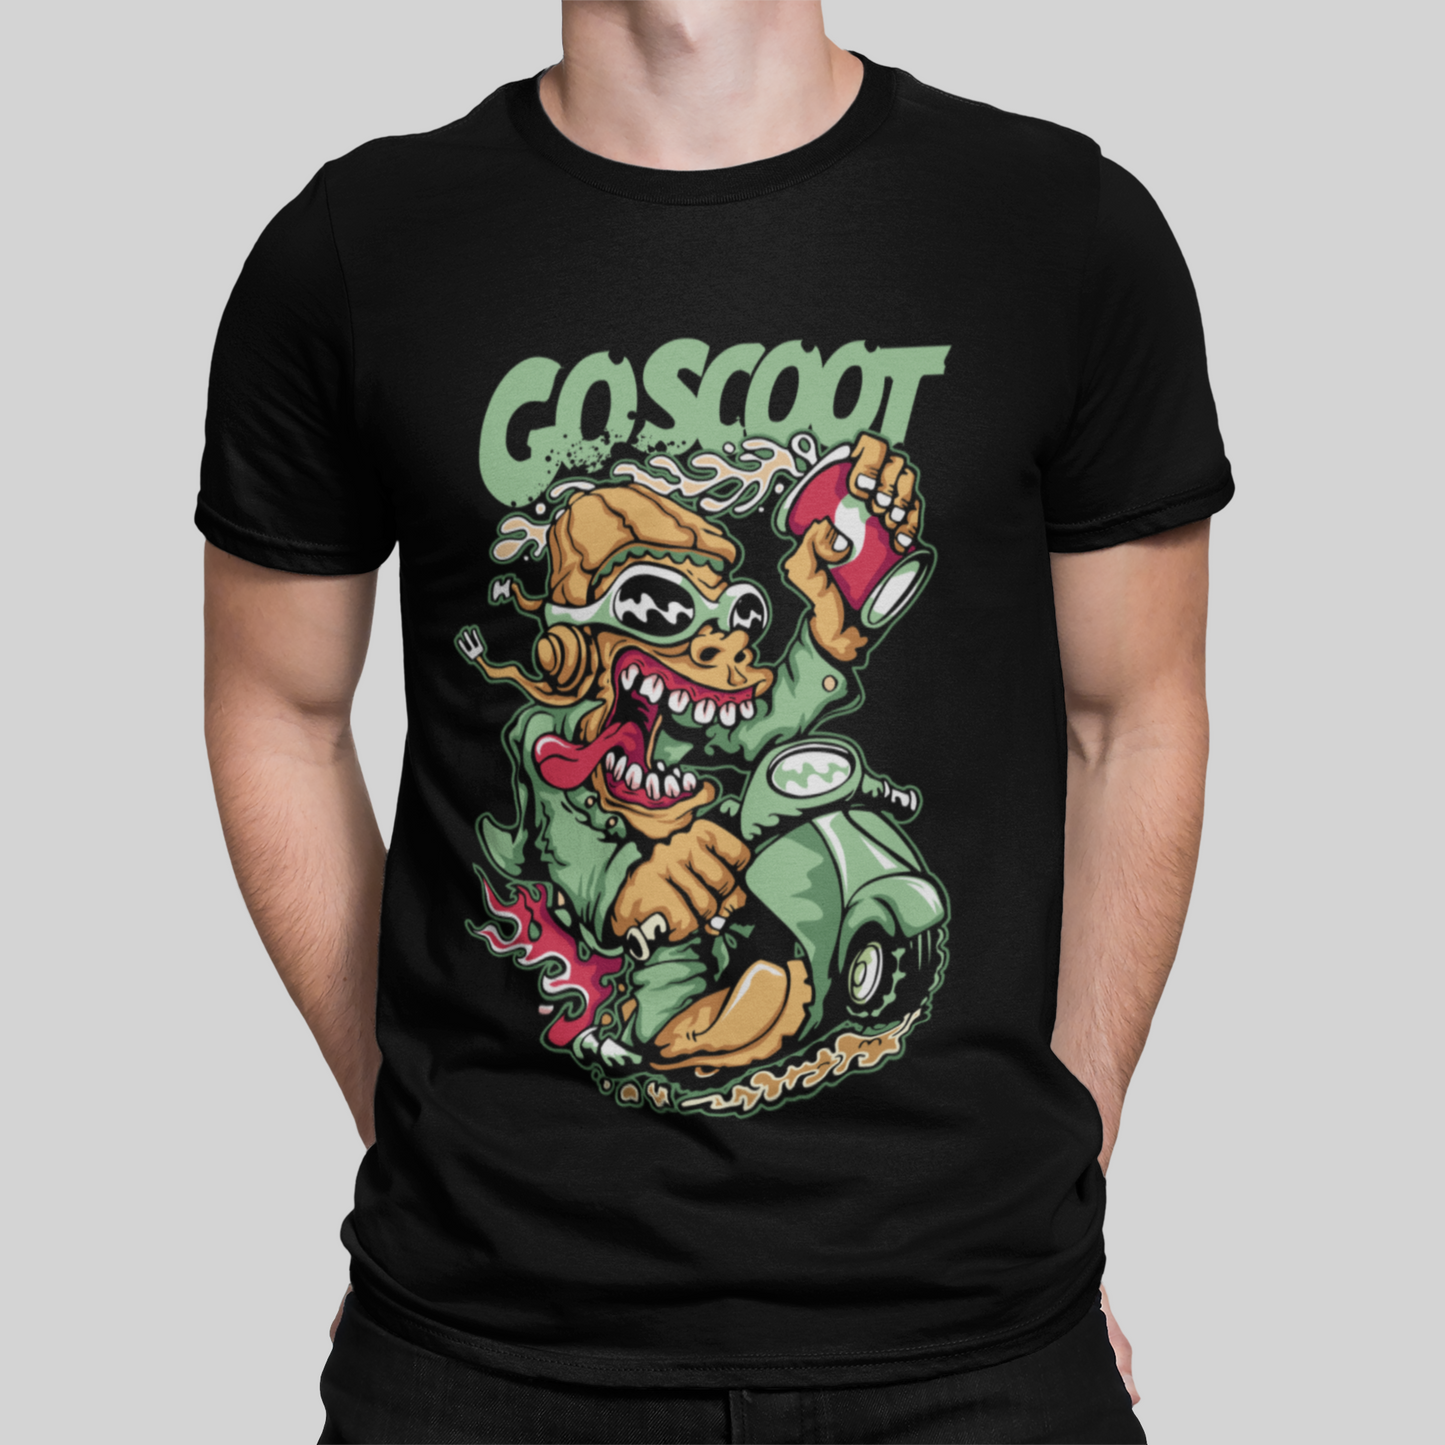 Goscoot Black T-Shirt For Men